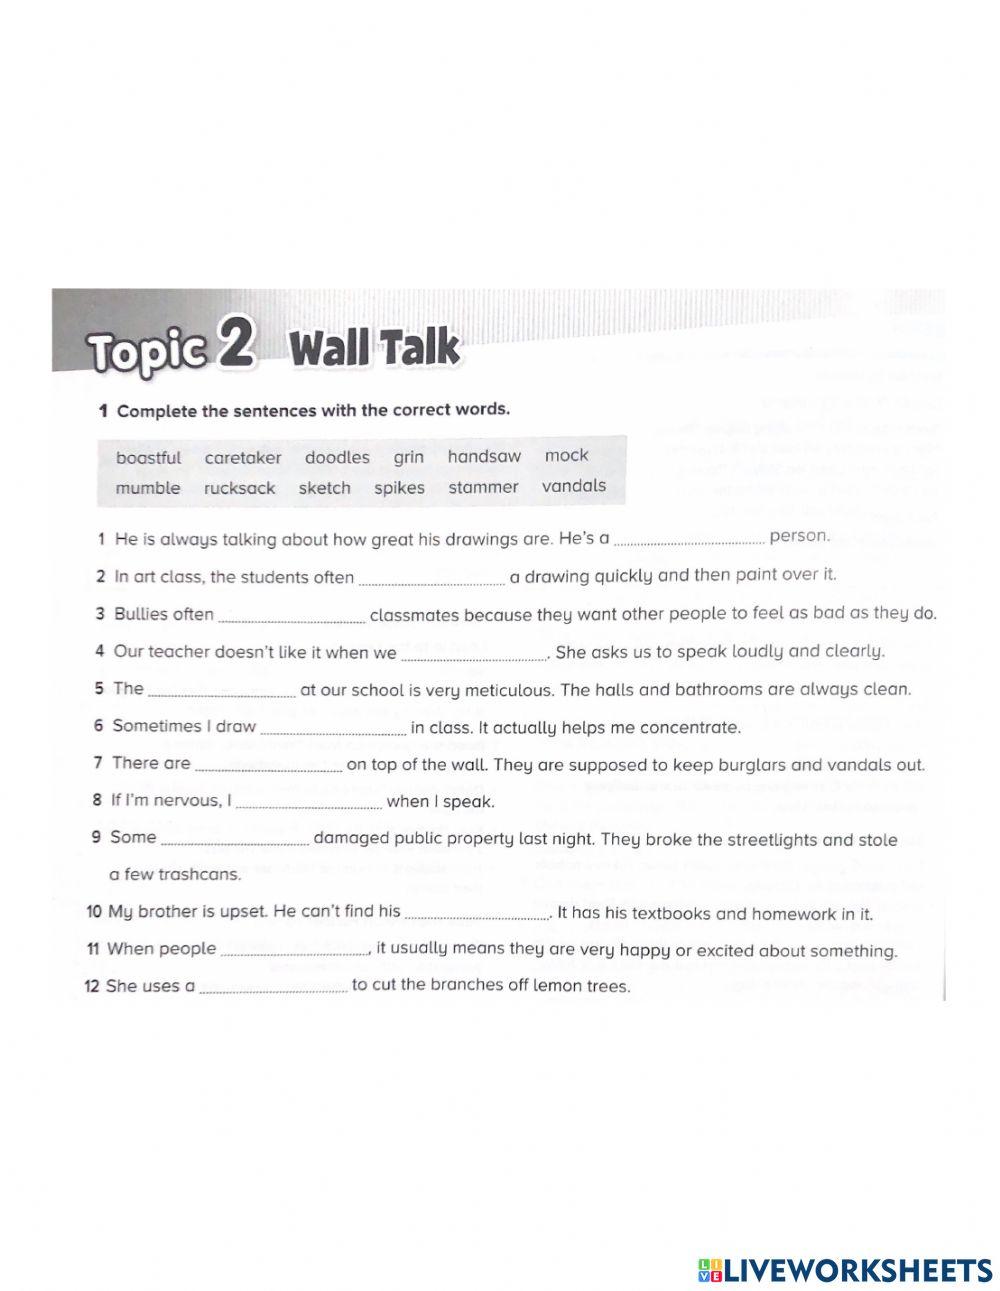 Wall Talk: Key Words